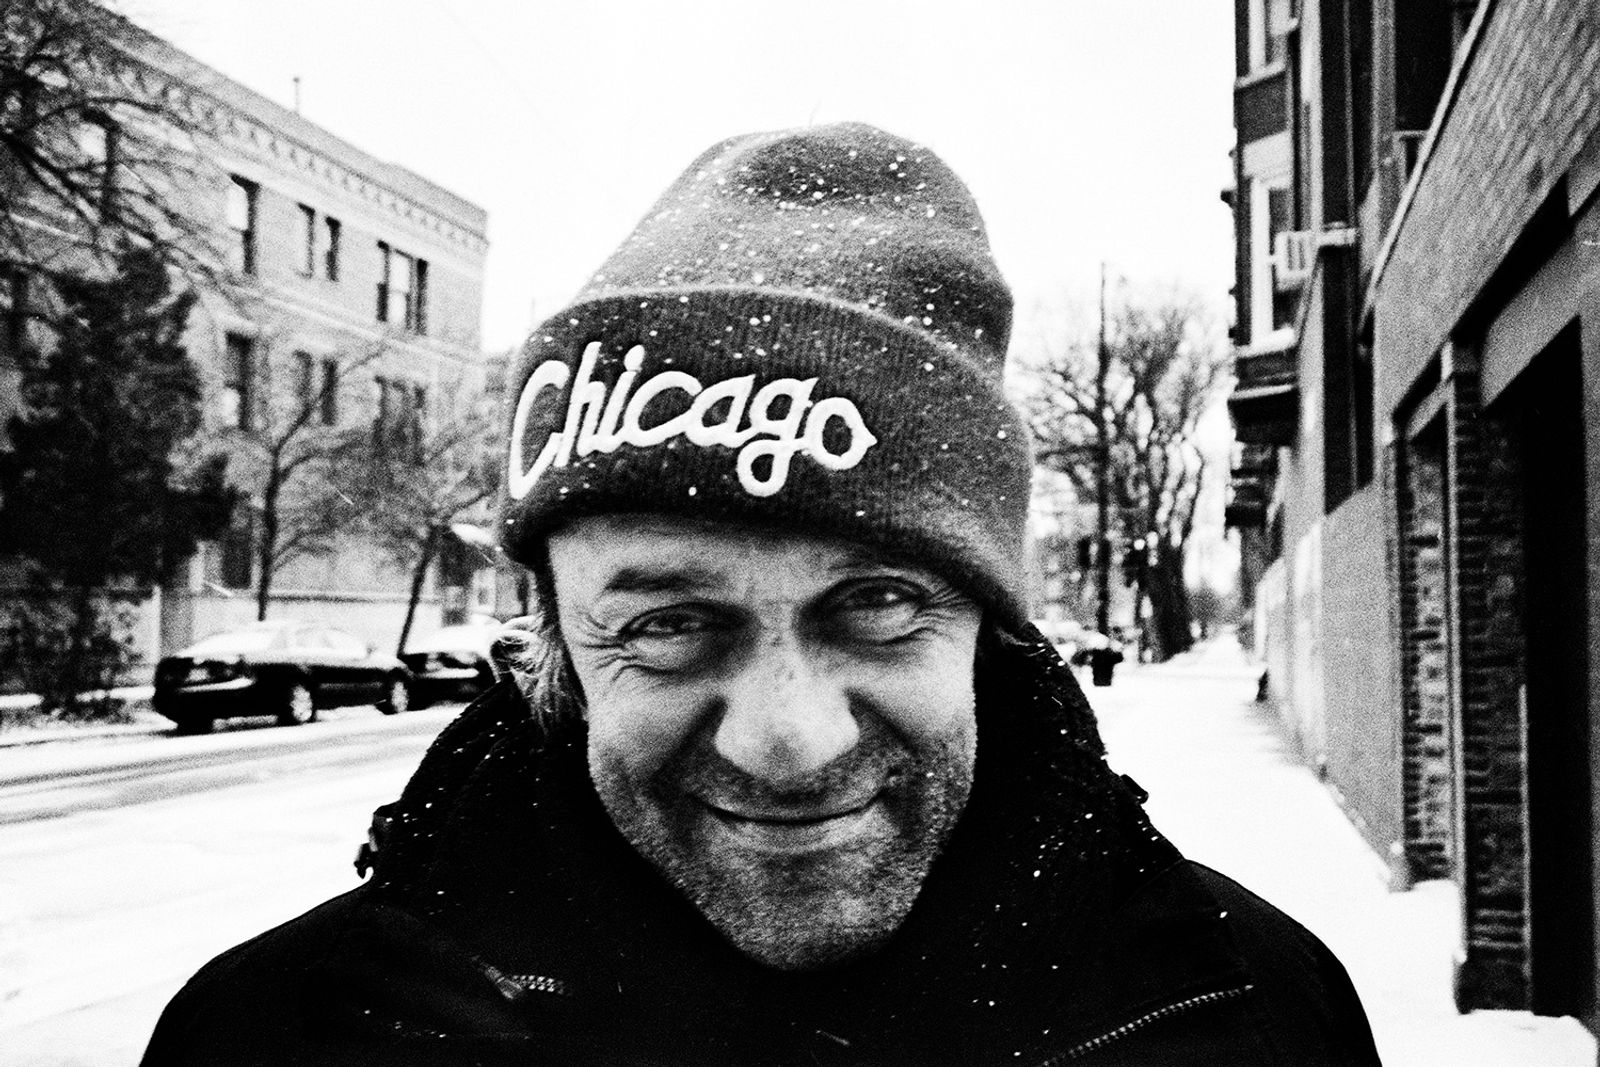 © Vincent Couderc - Chicago, 2013